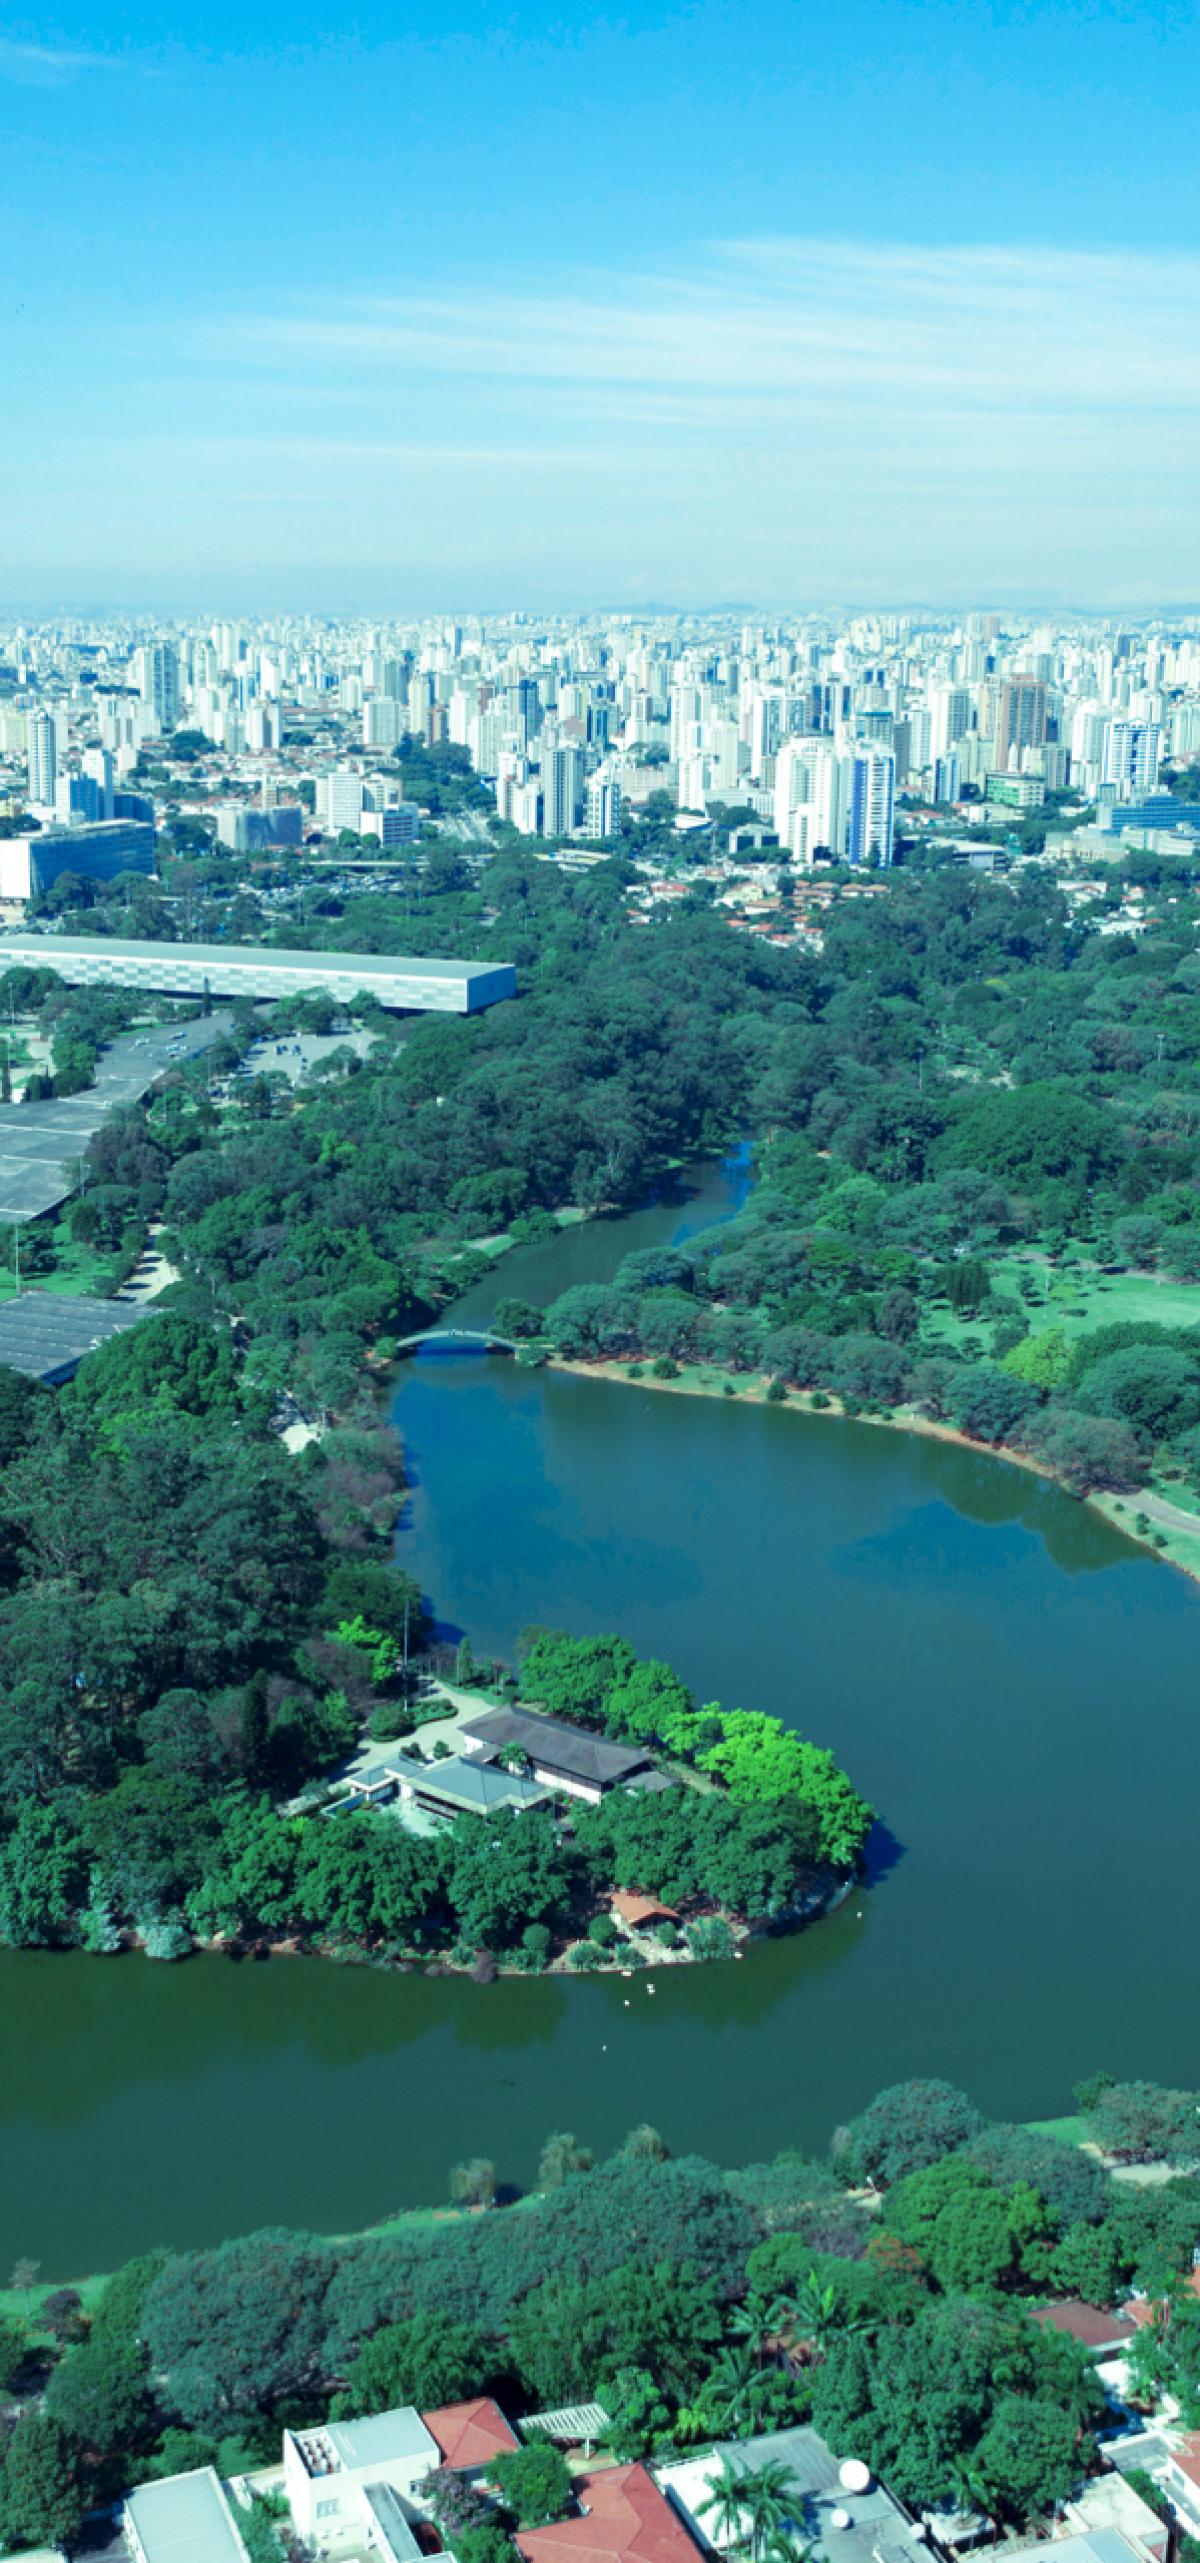 Mais antigo parque da cidade de São Paulo: Parque do Ibirapuera